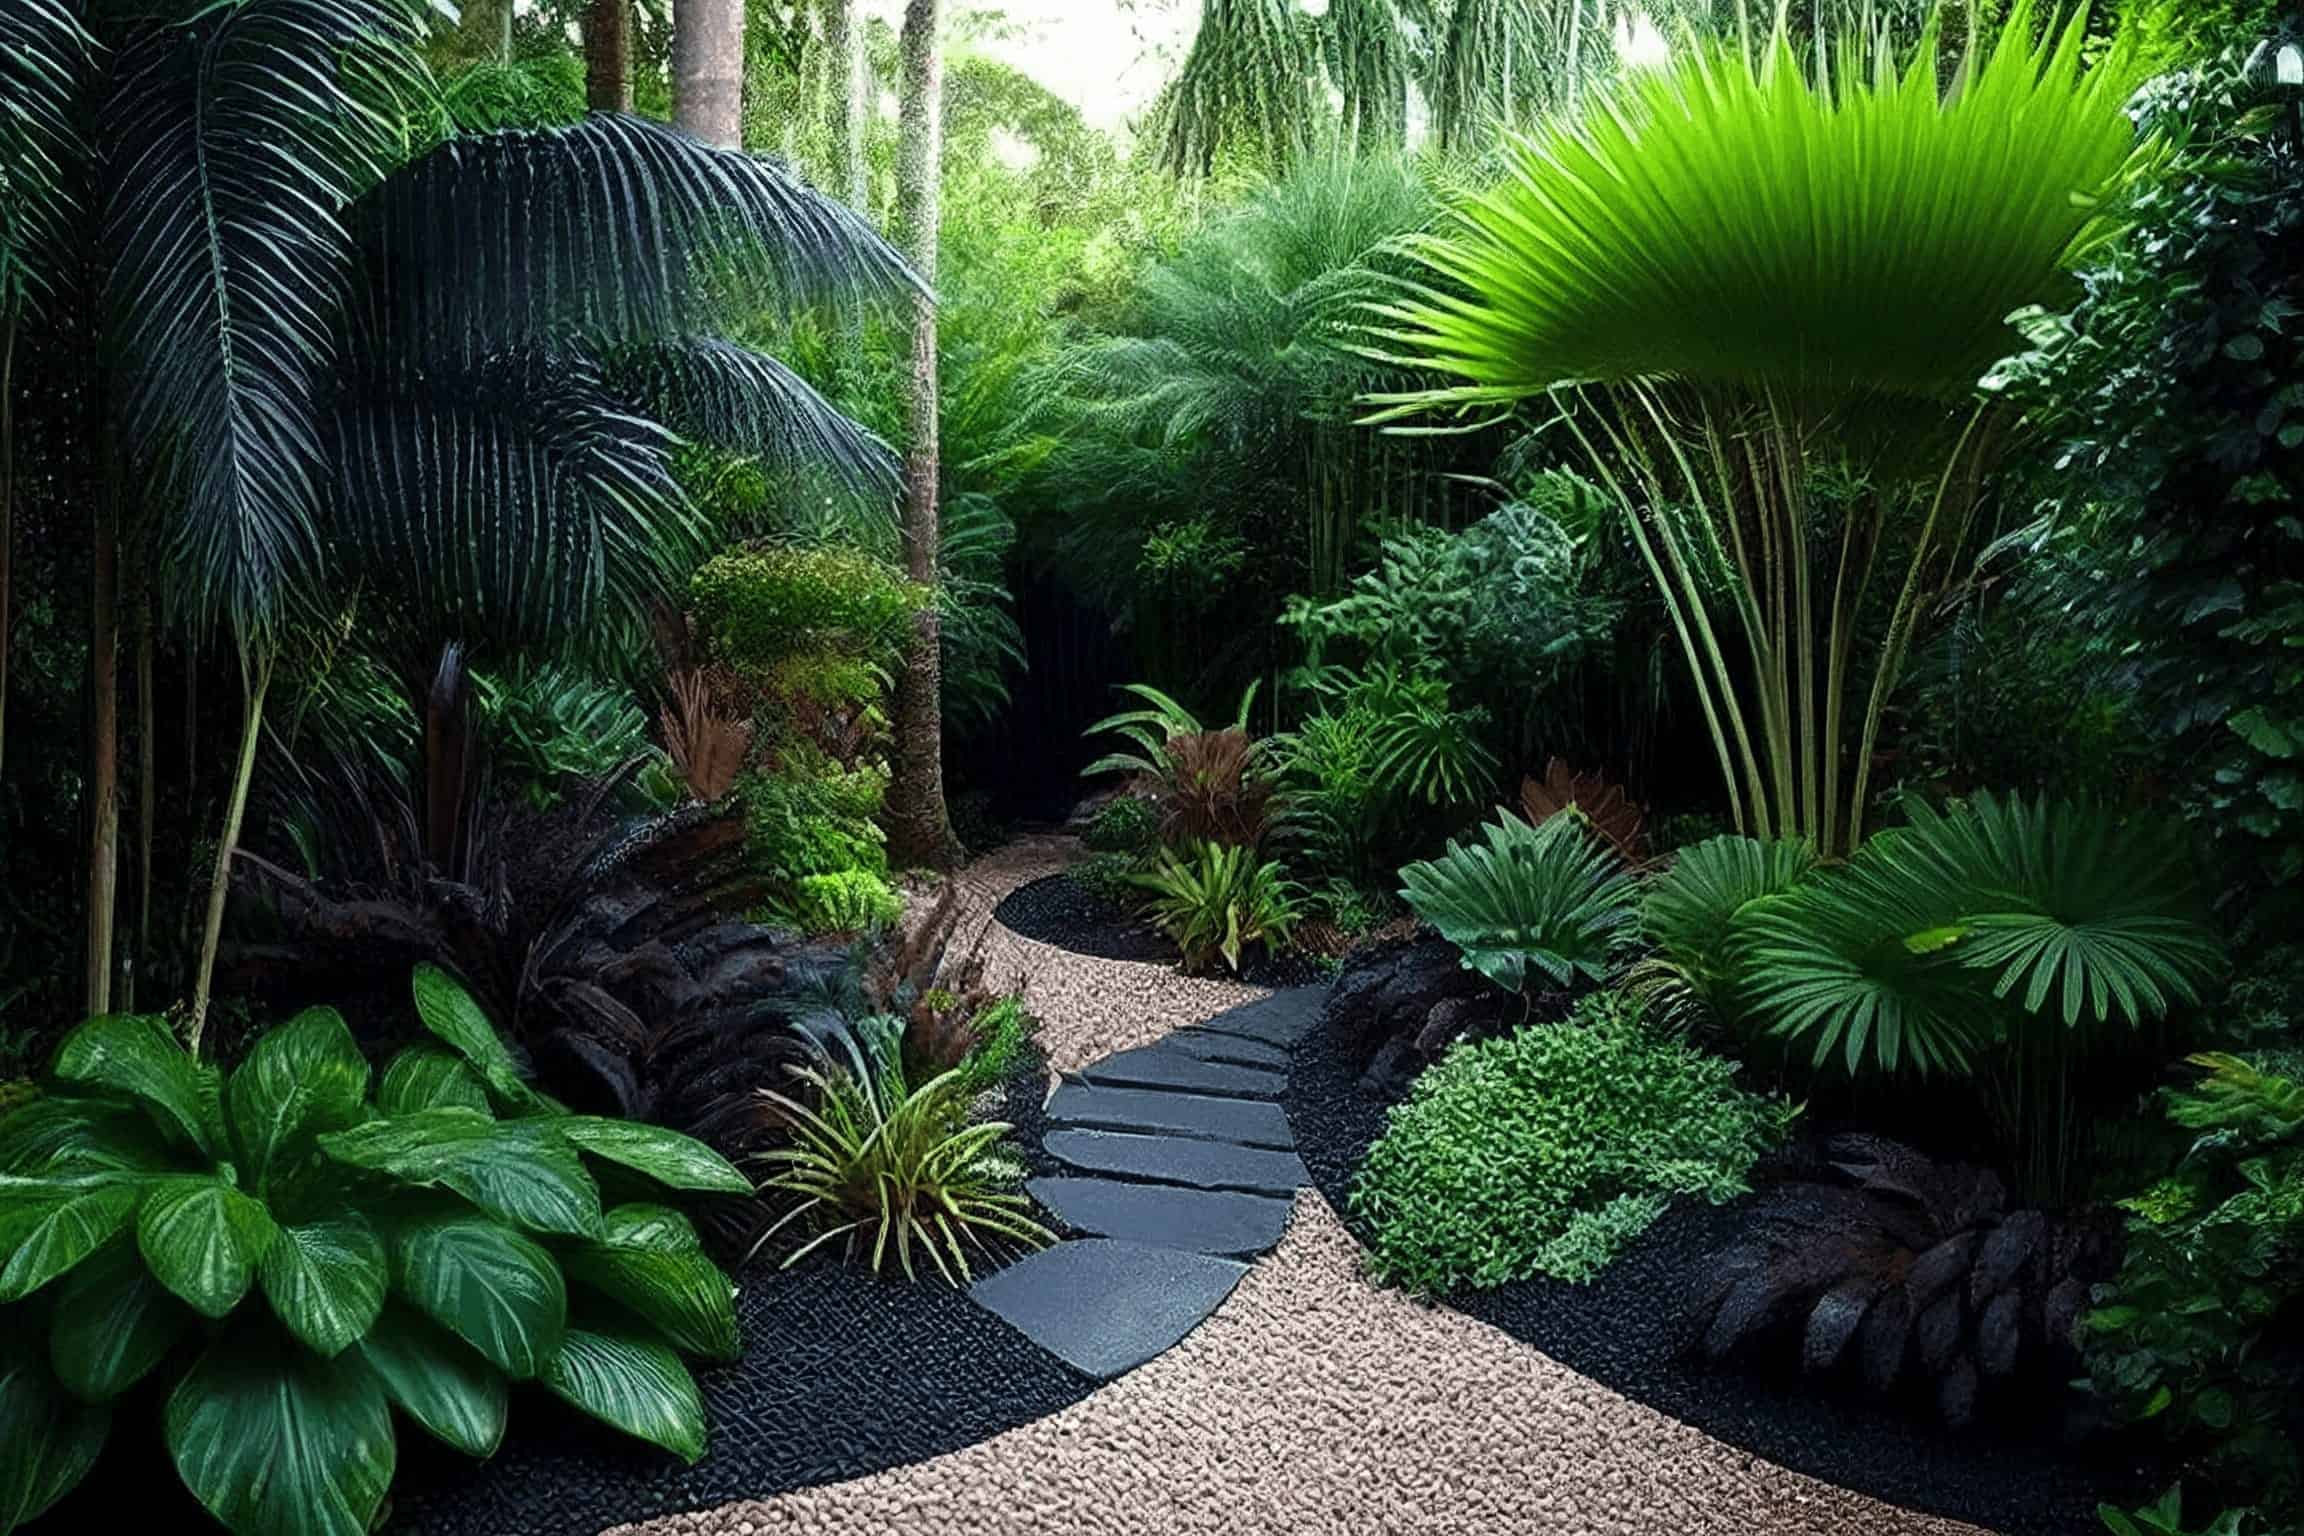 Tropical garden styles Image 1